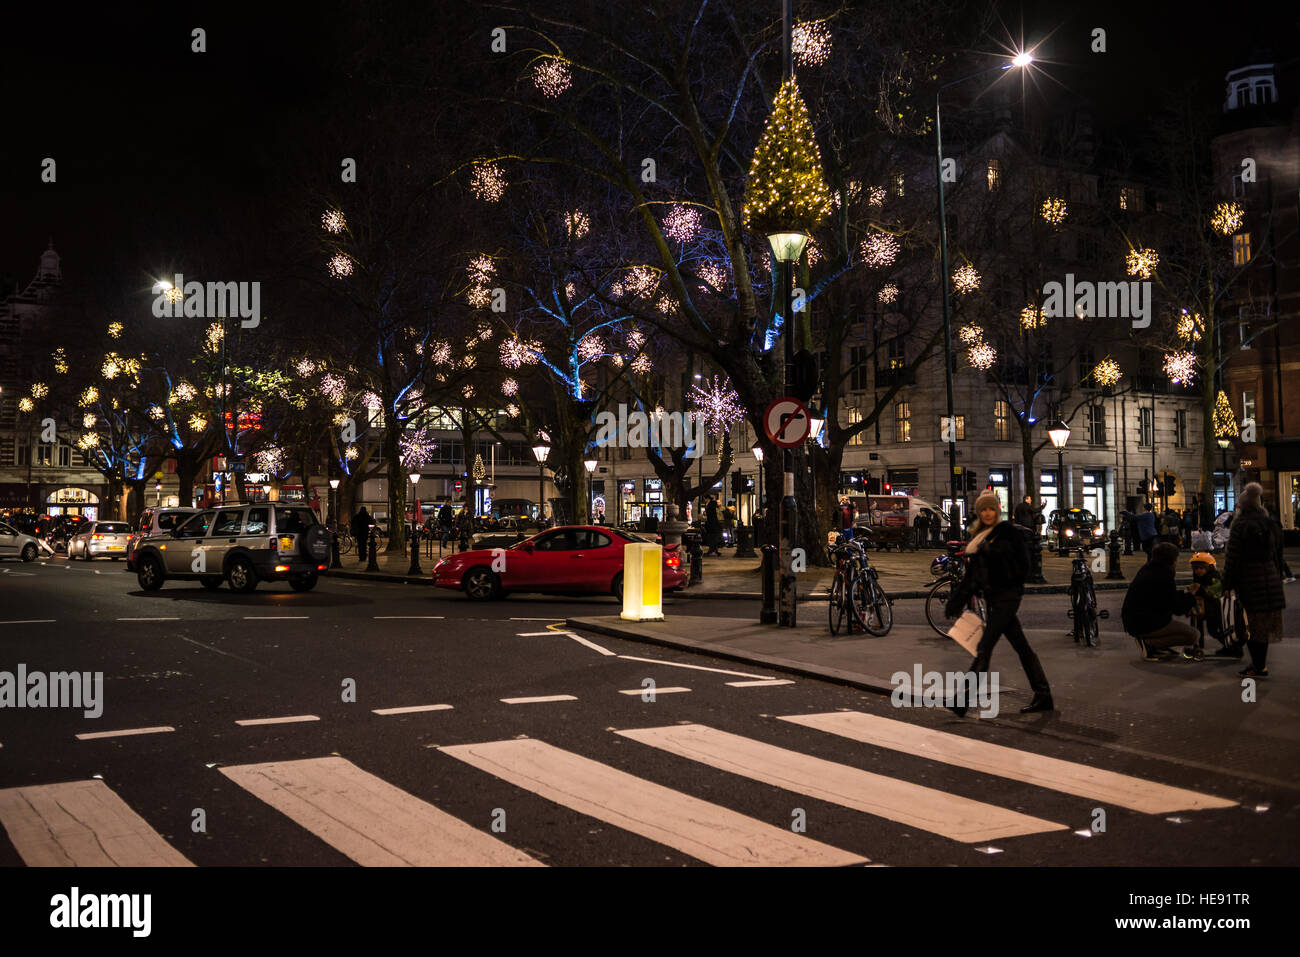 Londra, Inghilterra - 17 dicembre 2016: vista notturna di Sloane Square con la luce di Natale decorazioni e le persone che attraversano la strada a Chelsea, Londra, Regno Unito. Foto Stock